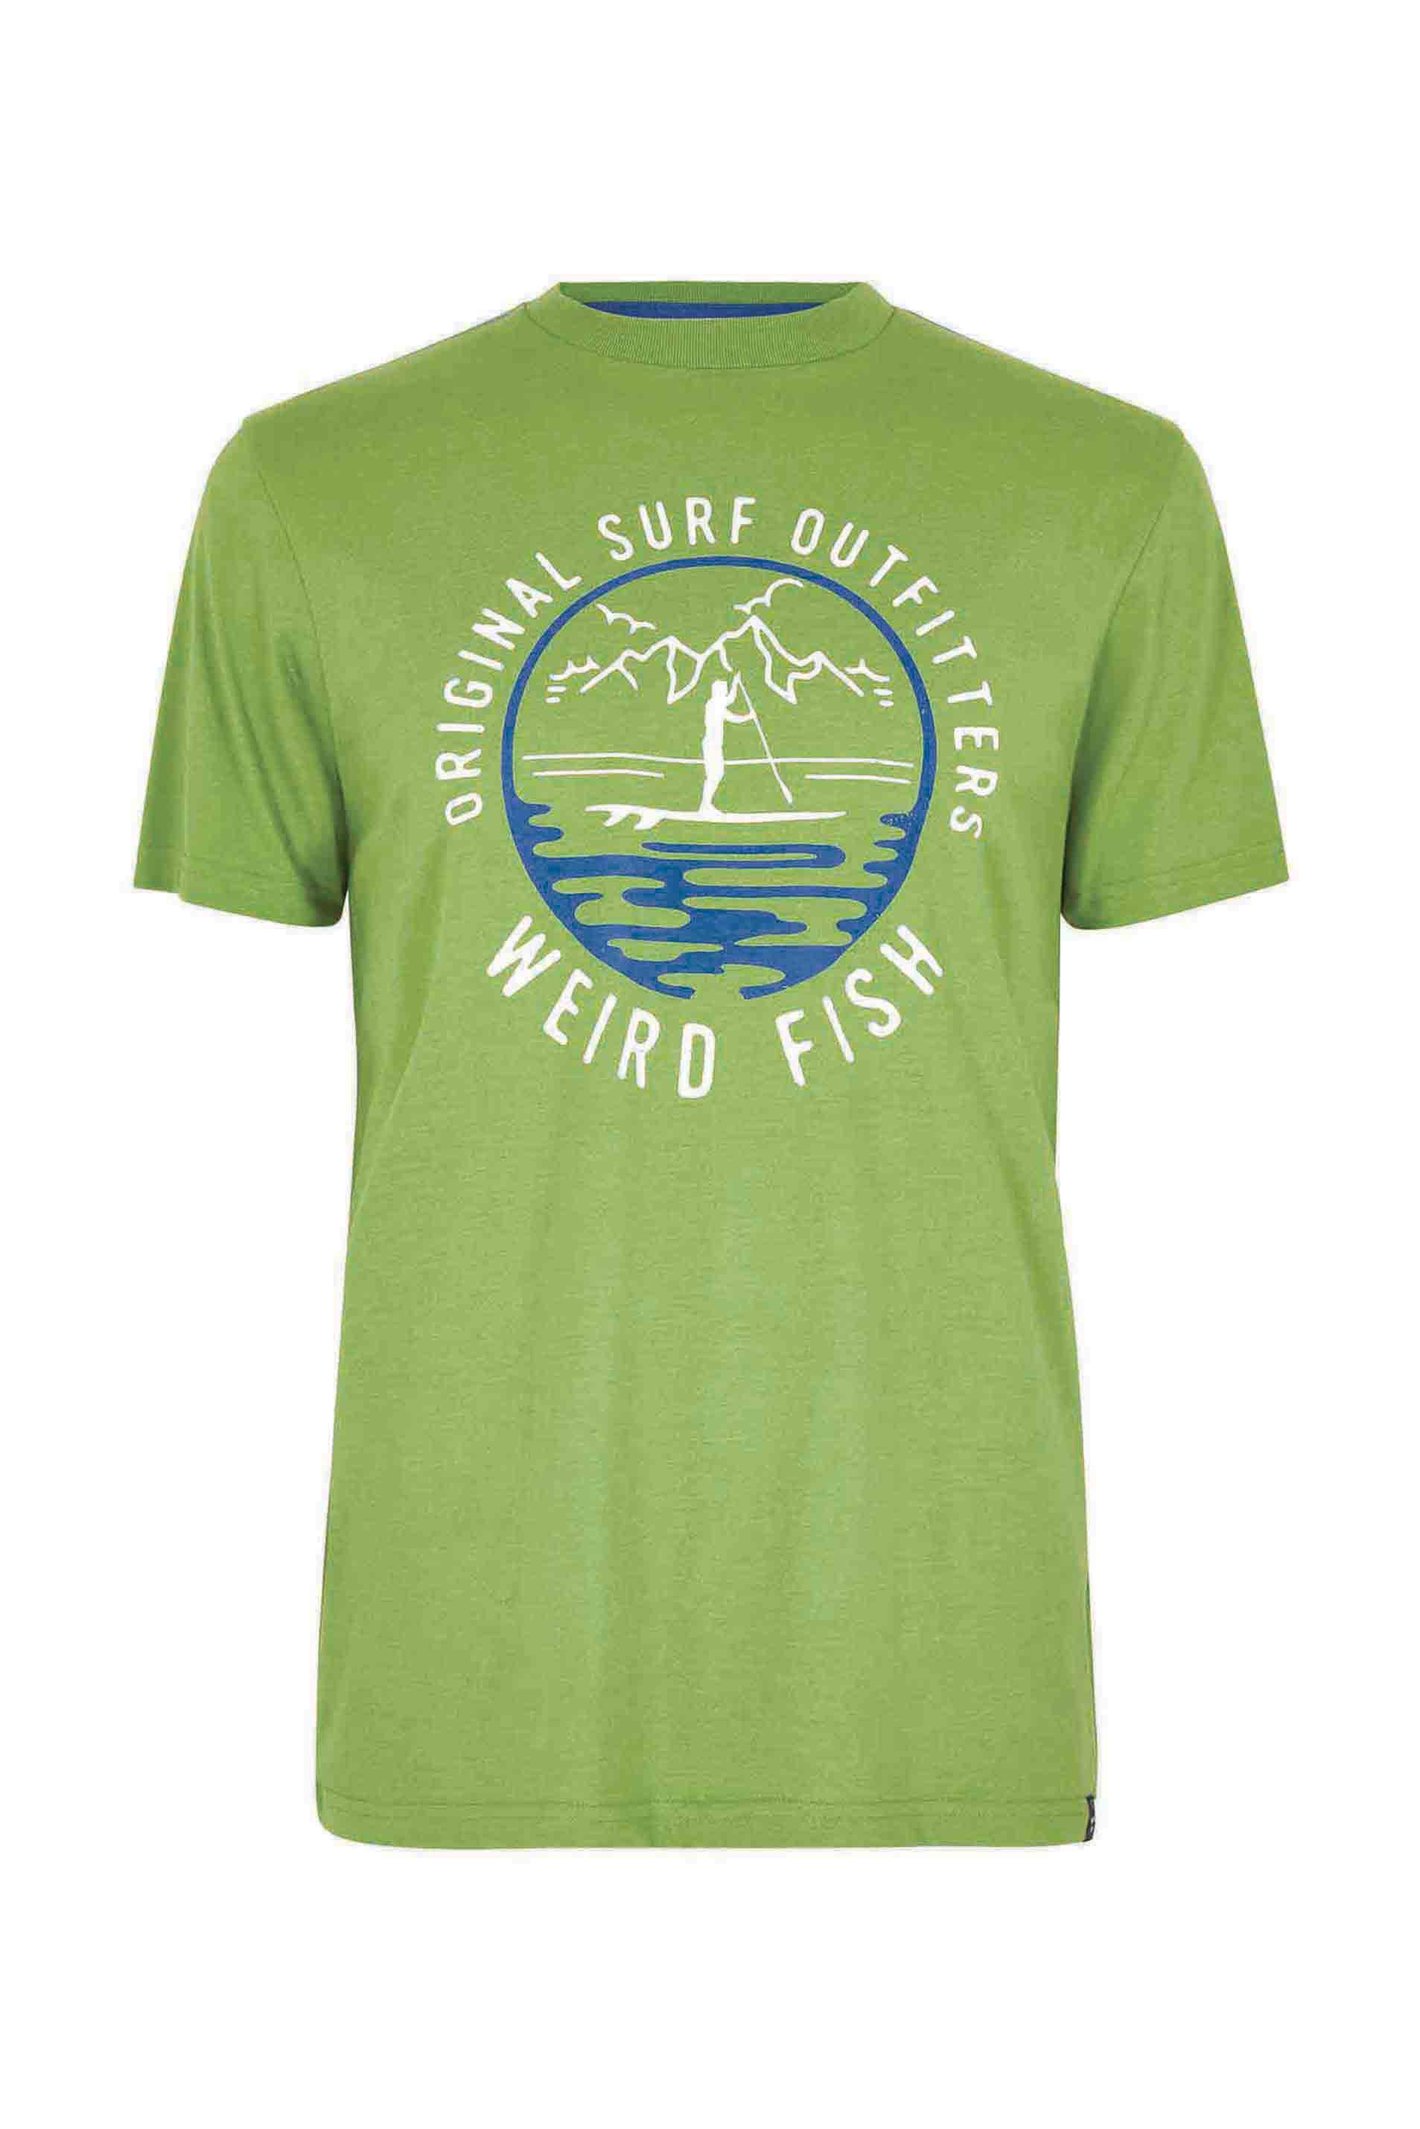 Weird Fish Paddle Eco Graphic T-Shirt Kiwi Size S